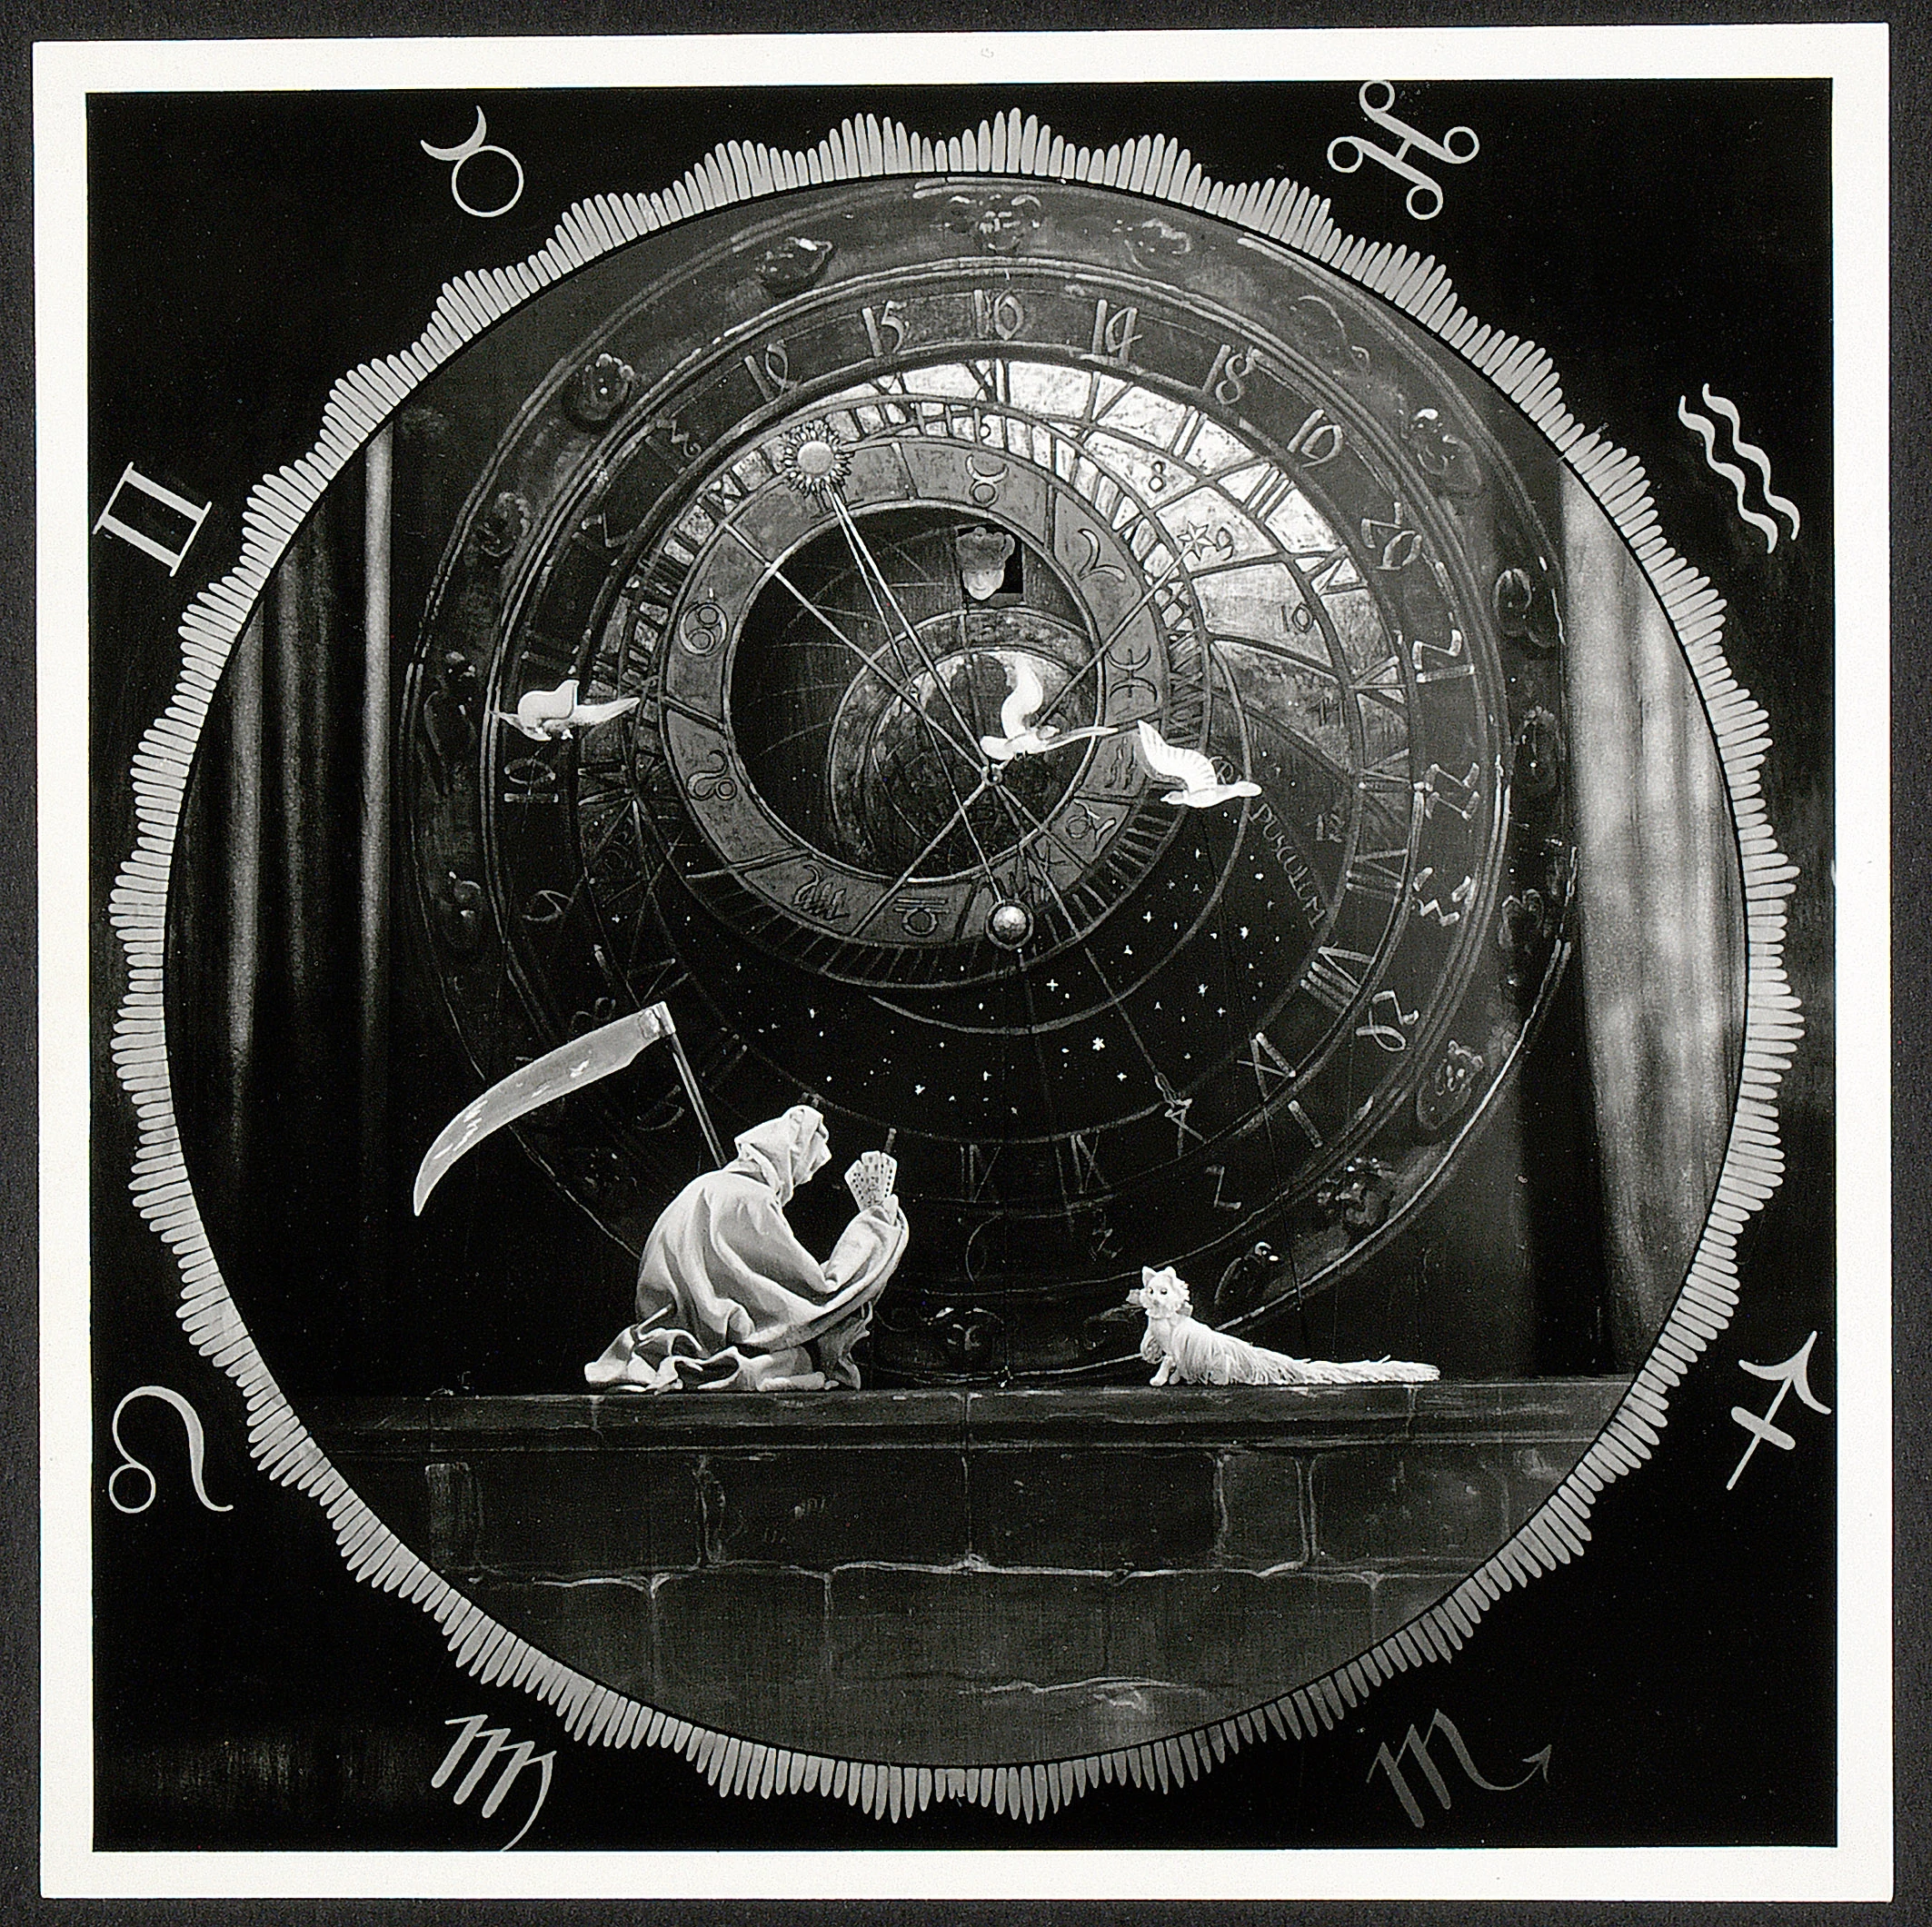 The Life Clock, Richard Teschner